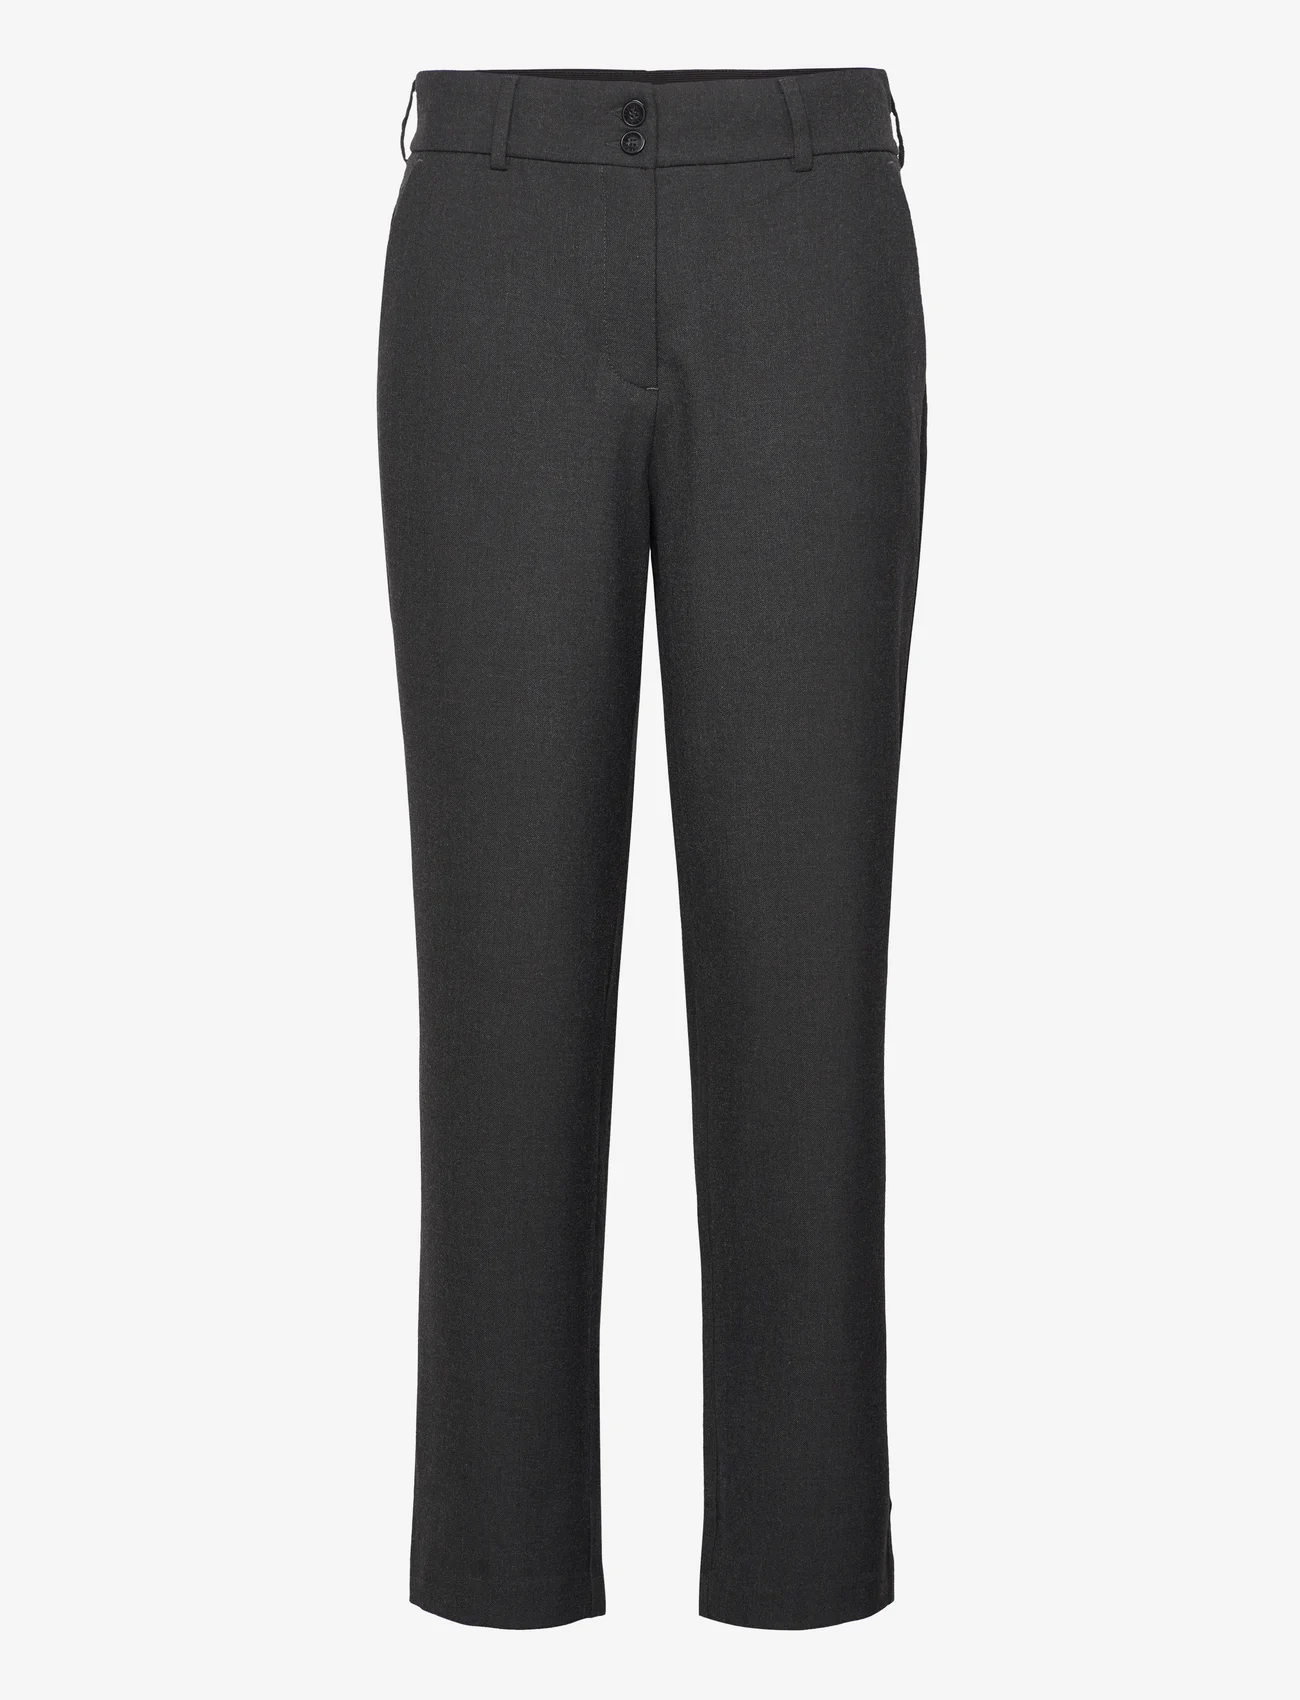 FIVEUNITS - Daphne - bukser med lige ben - dark grey melange - 0